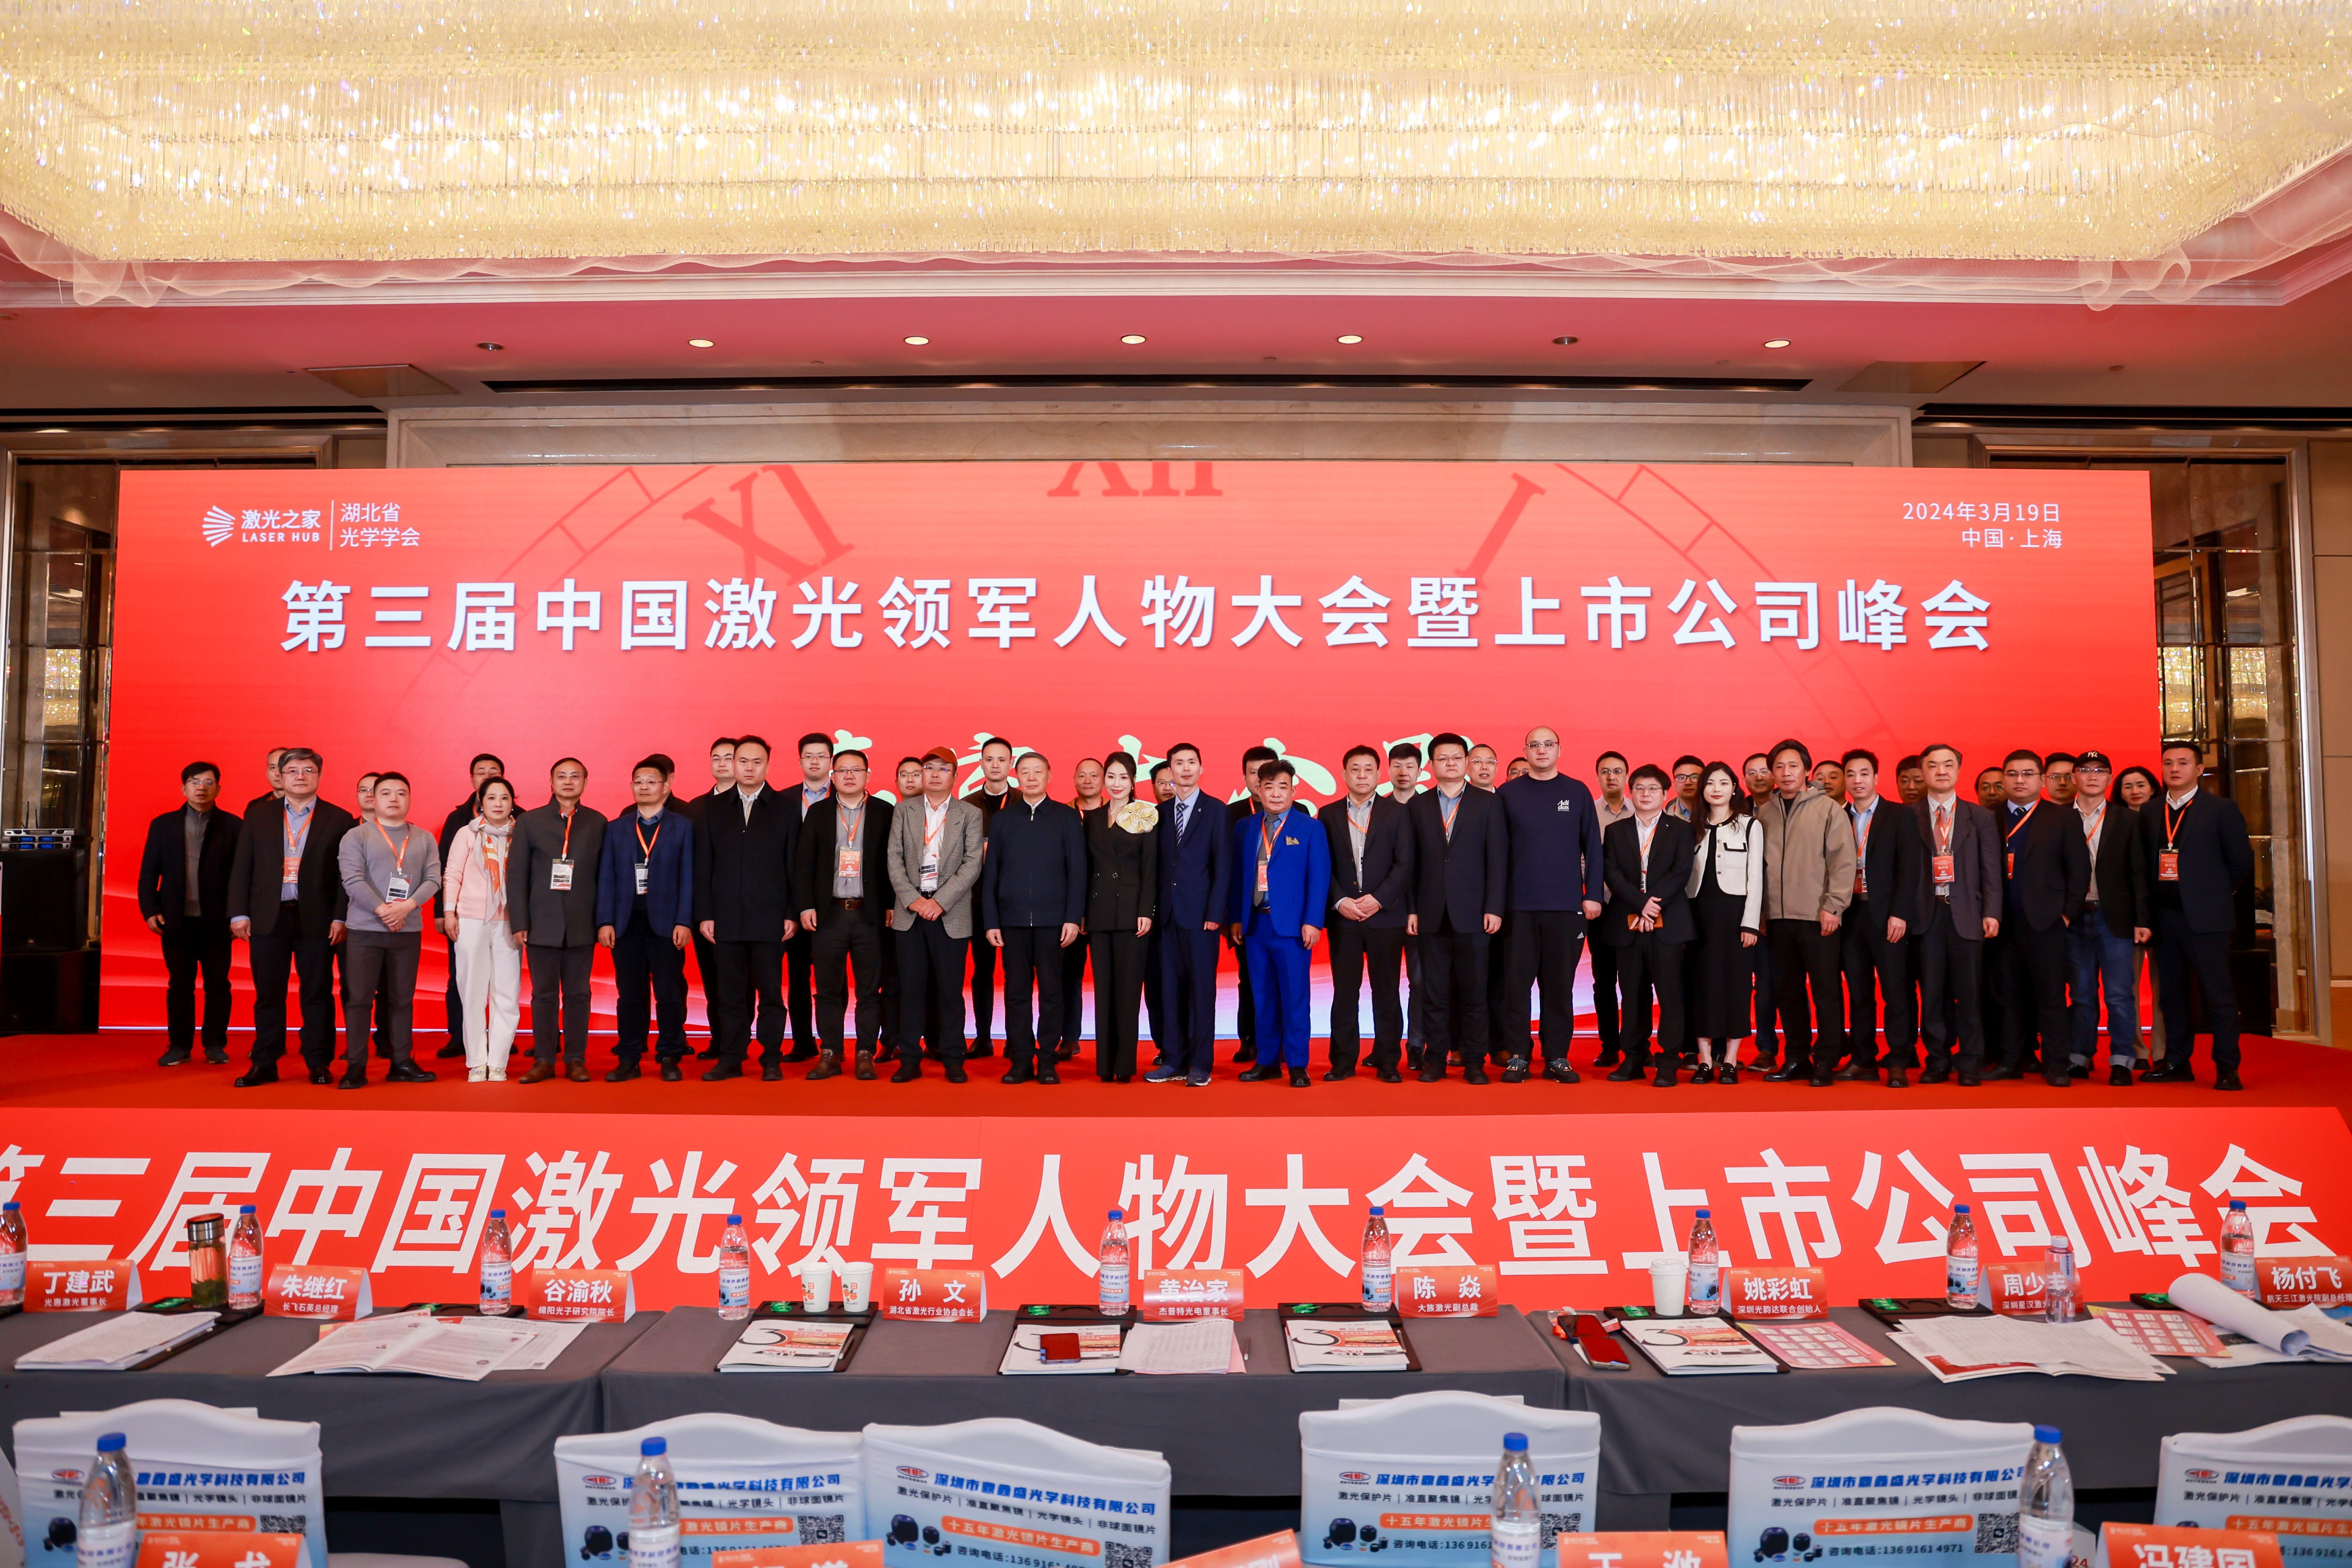 44118太阳诚公司受邀在第三届中国激光领军人物大会暨上市公司峰会上发表主题演讲